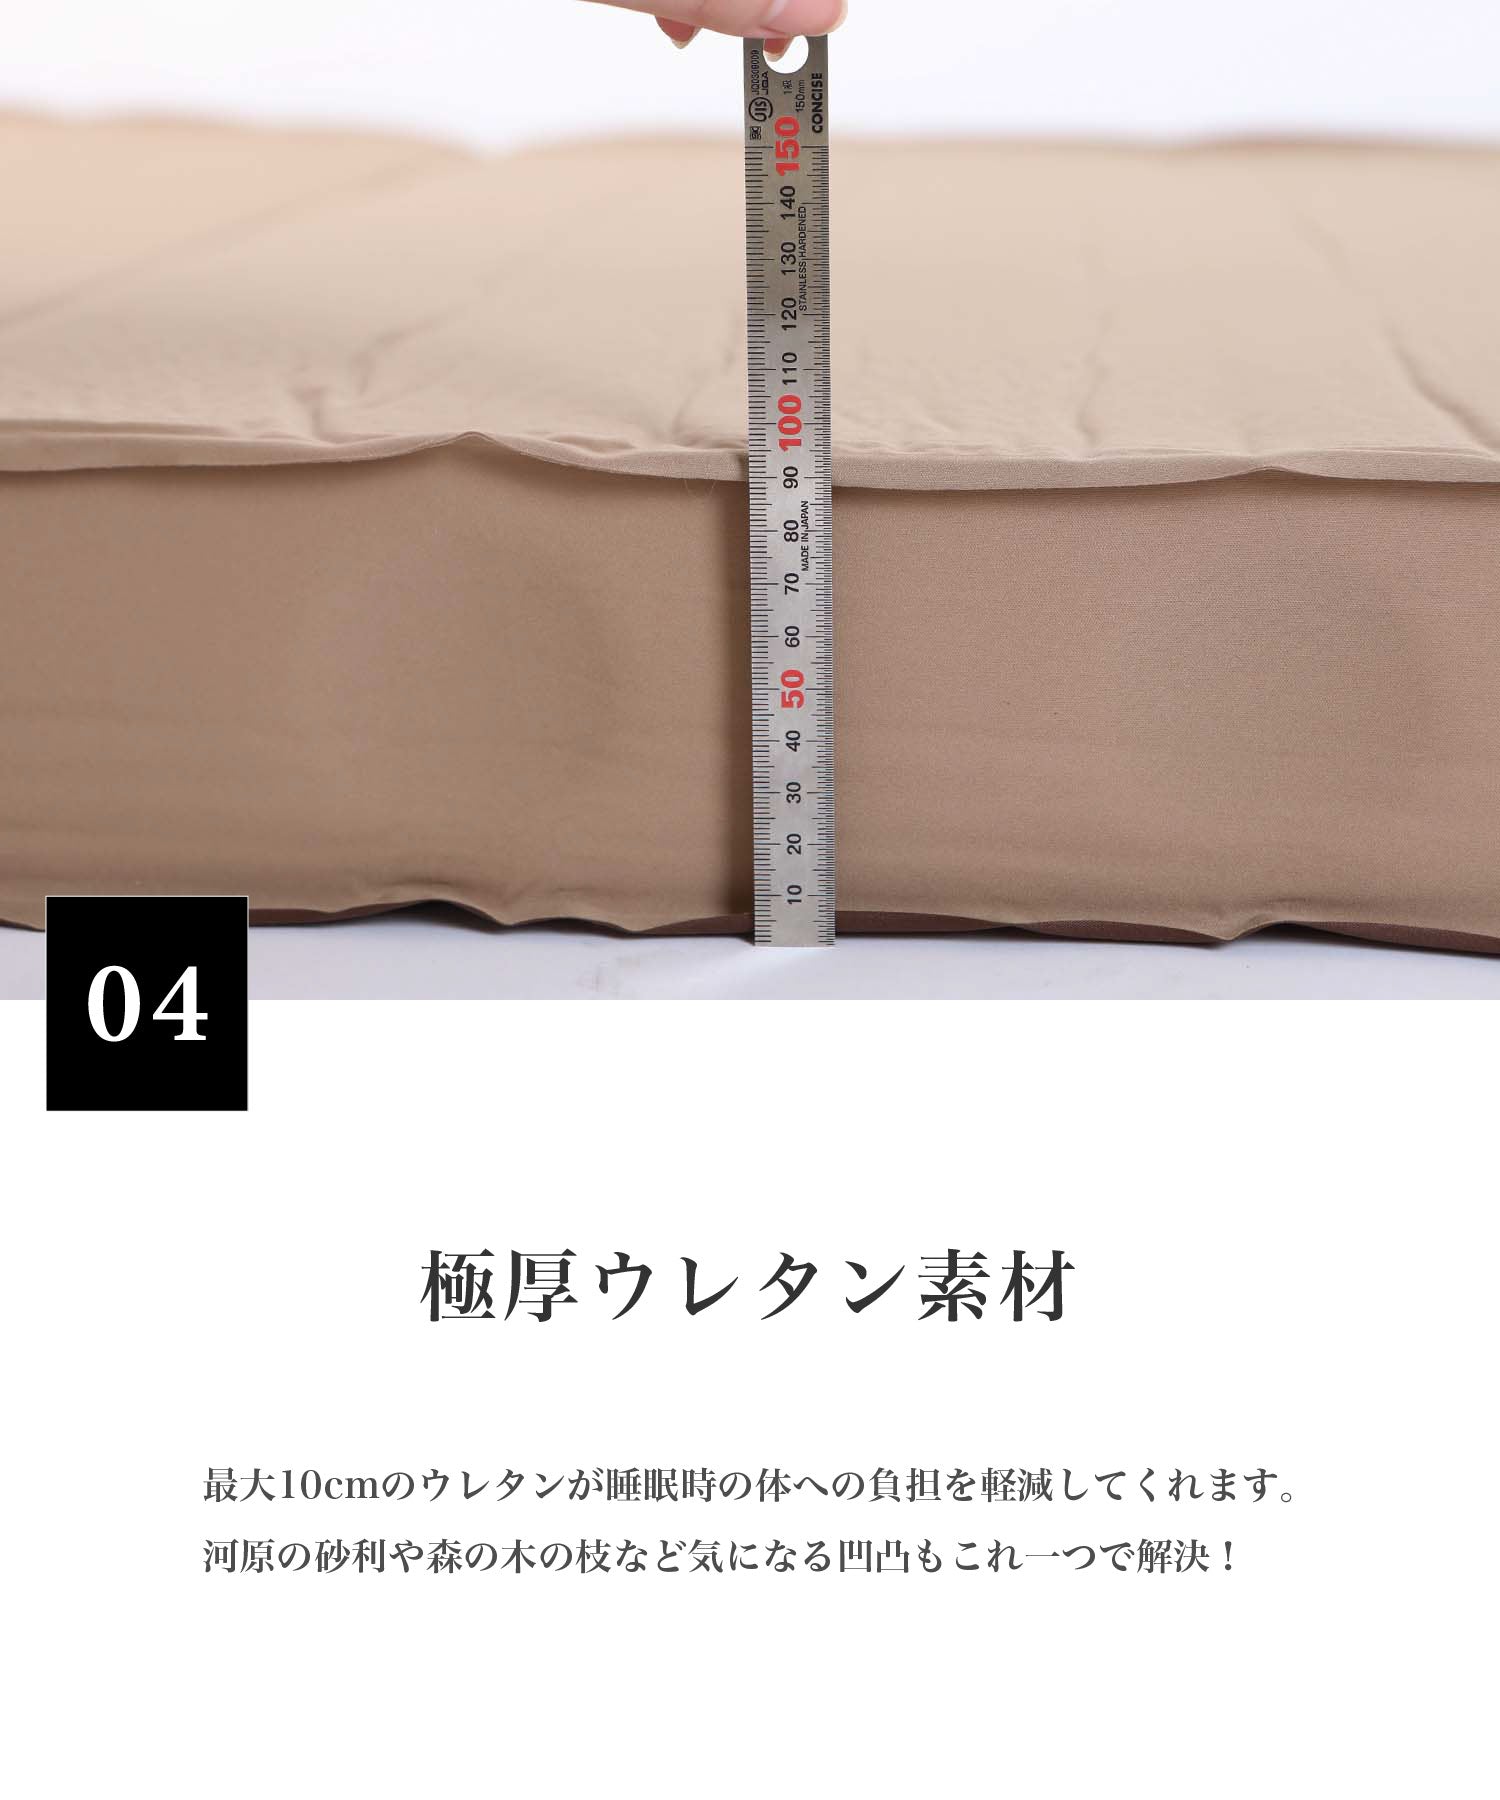 OYASUMI MAT S】シングルサイズのの折り畳み可能なキャンプ用マット